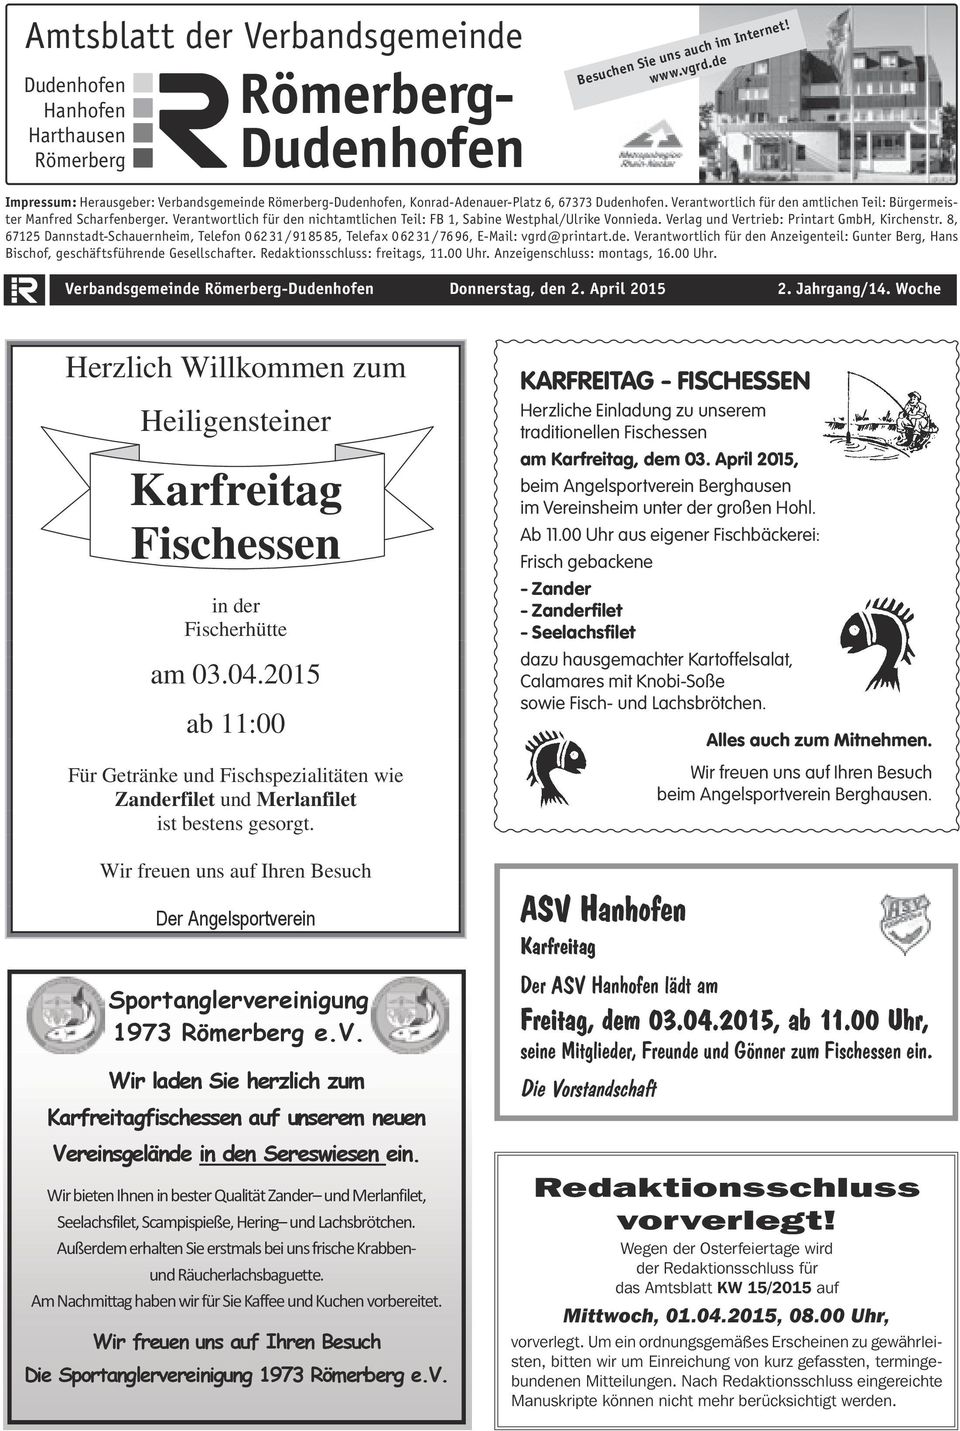 Verlag und Vertrieb: Printart GmbH, Kirchenstr. 8, 67125 Dannstadt-Schauernheim, Telefon 0 62 31 / 91 85 85, Telefax 0 62 31 / 76 96, E-Mail: vgrd@printart.de.